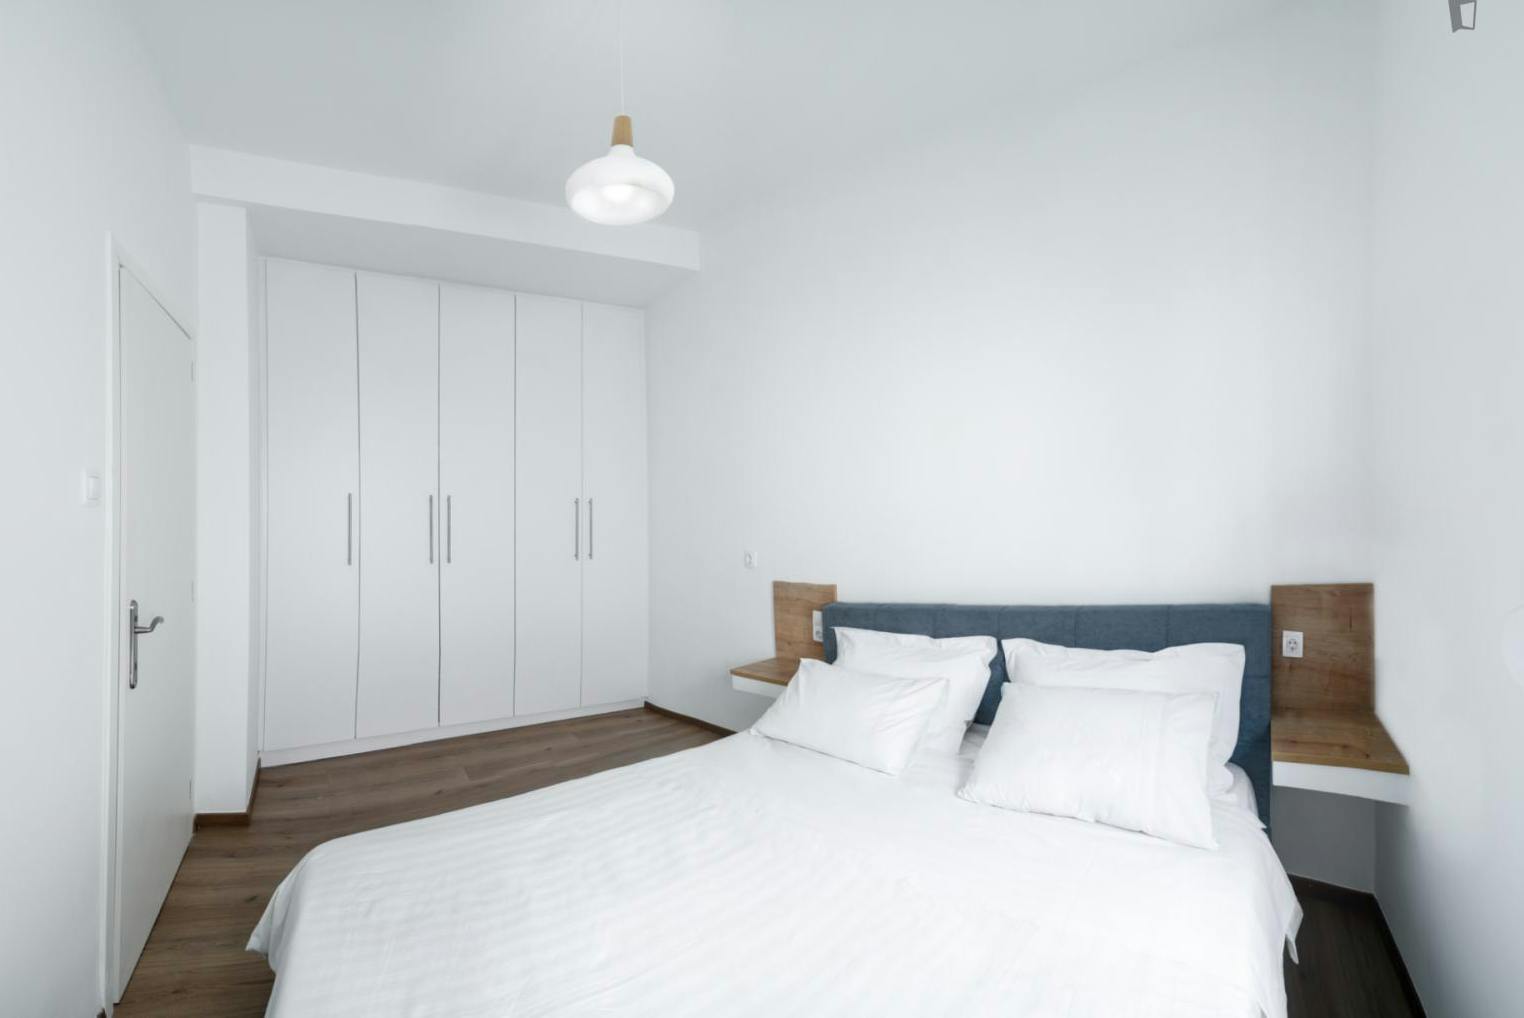 1 bedroom flat Volos city center